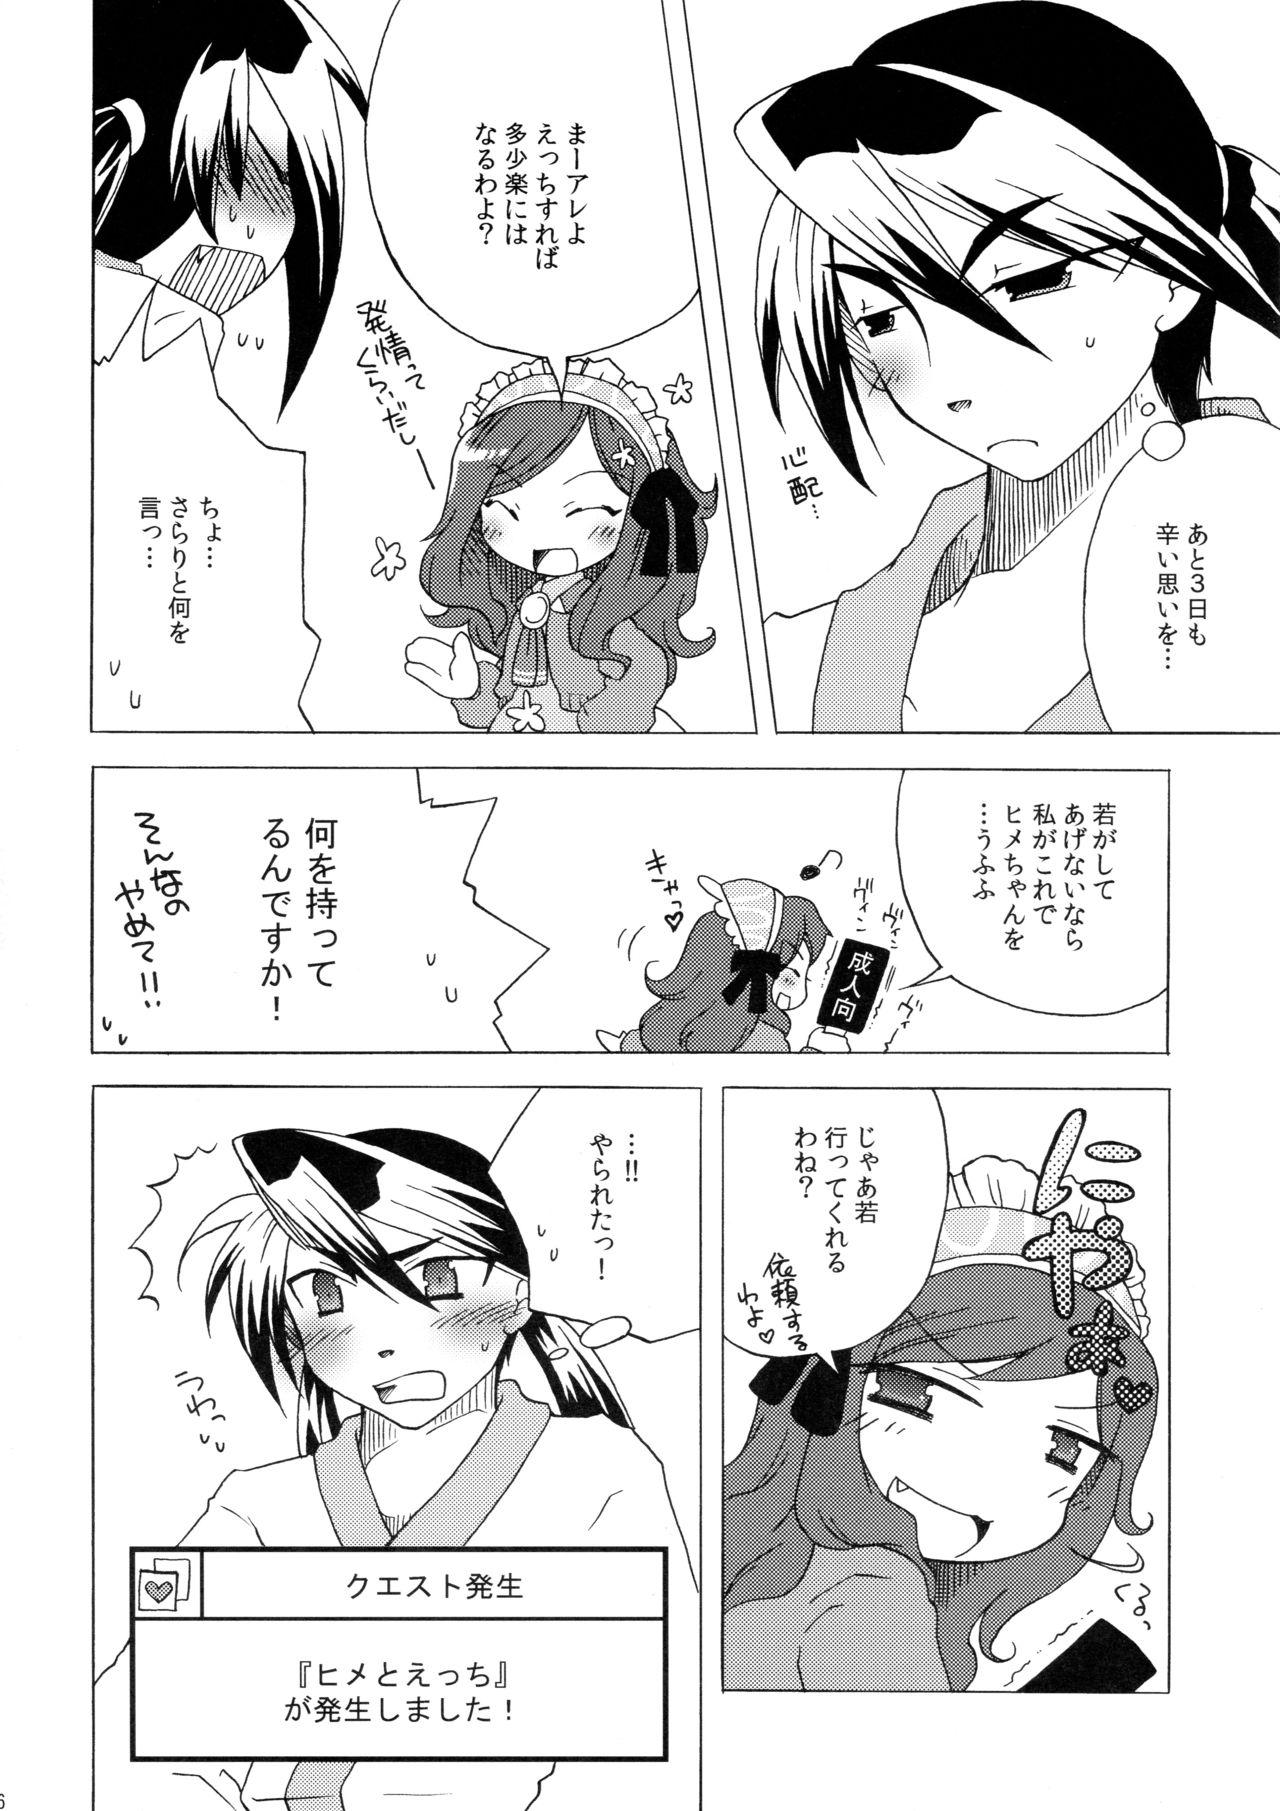 Art Waka Utsu no Hajimete. - 7th dragon Hot Girl Fucking - Page 6